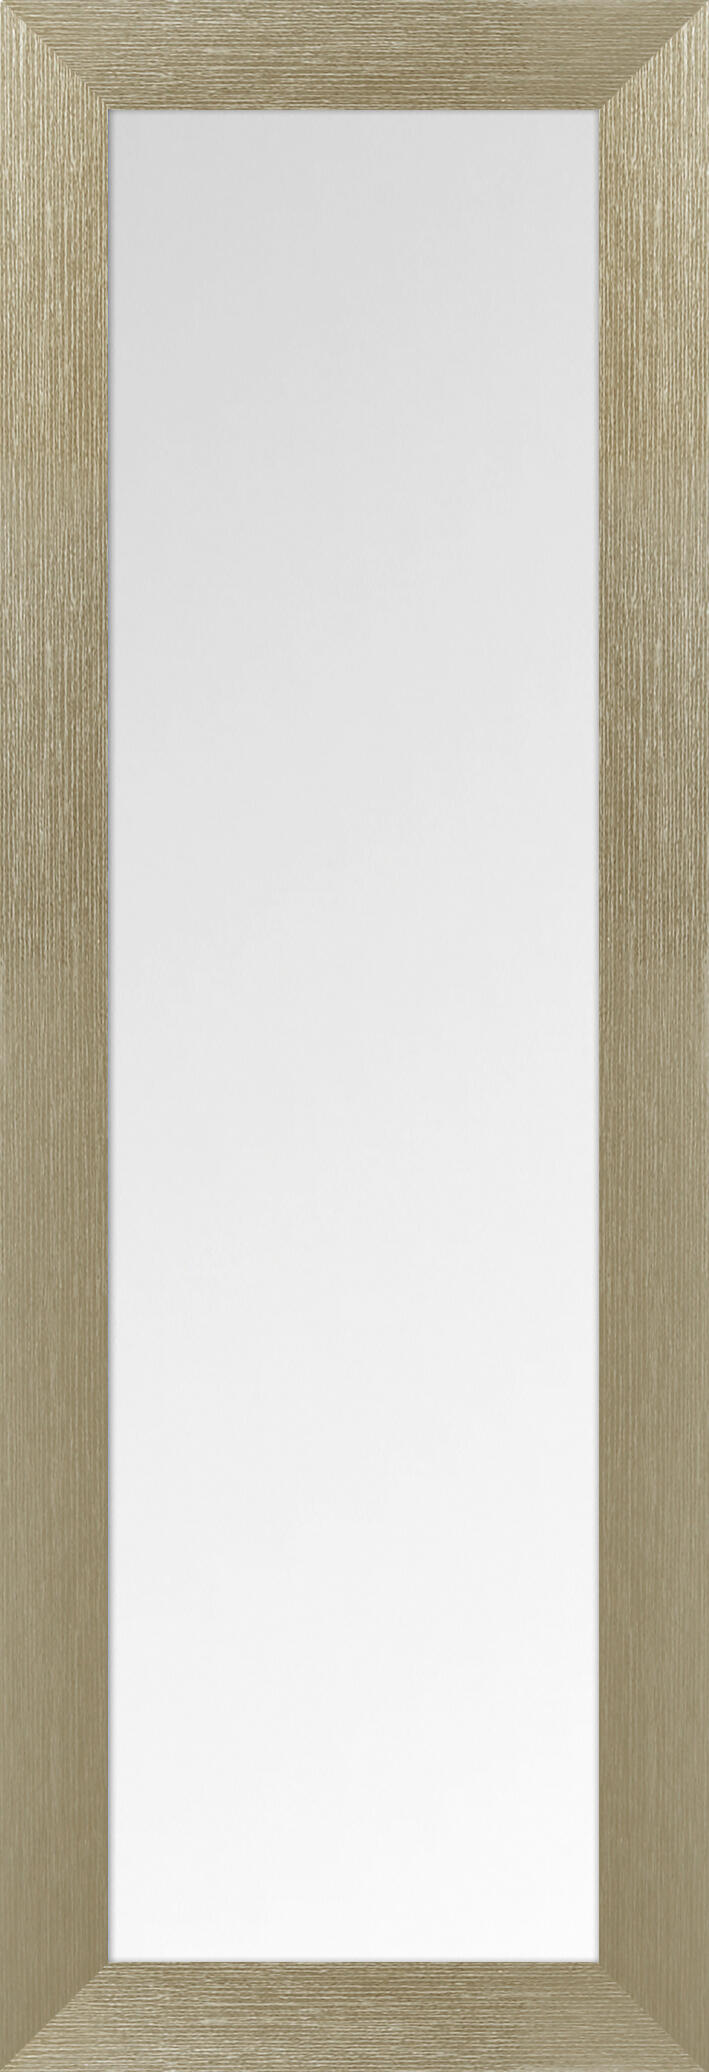 Espejo enmarcado rectangular estriado oro 155 x 52 cm